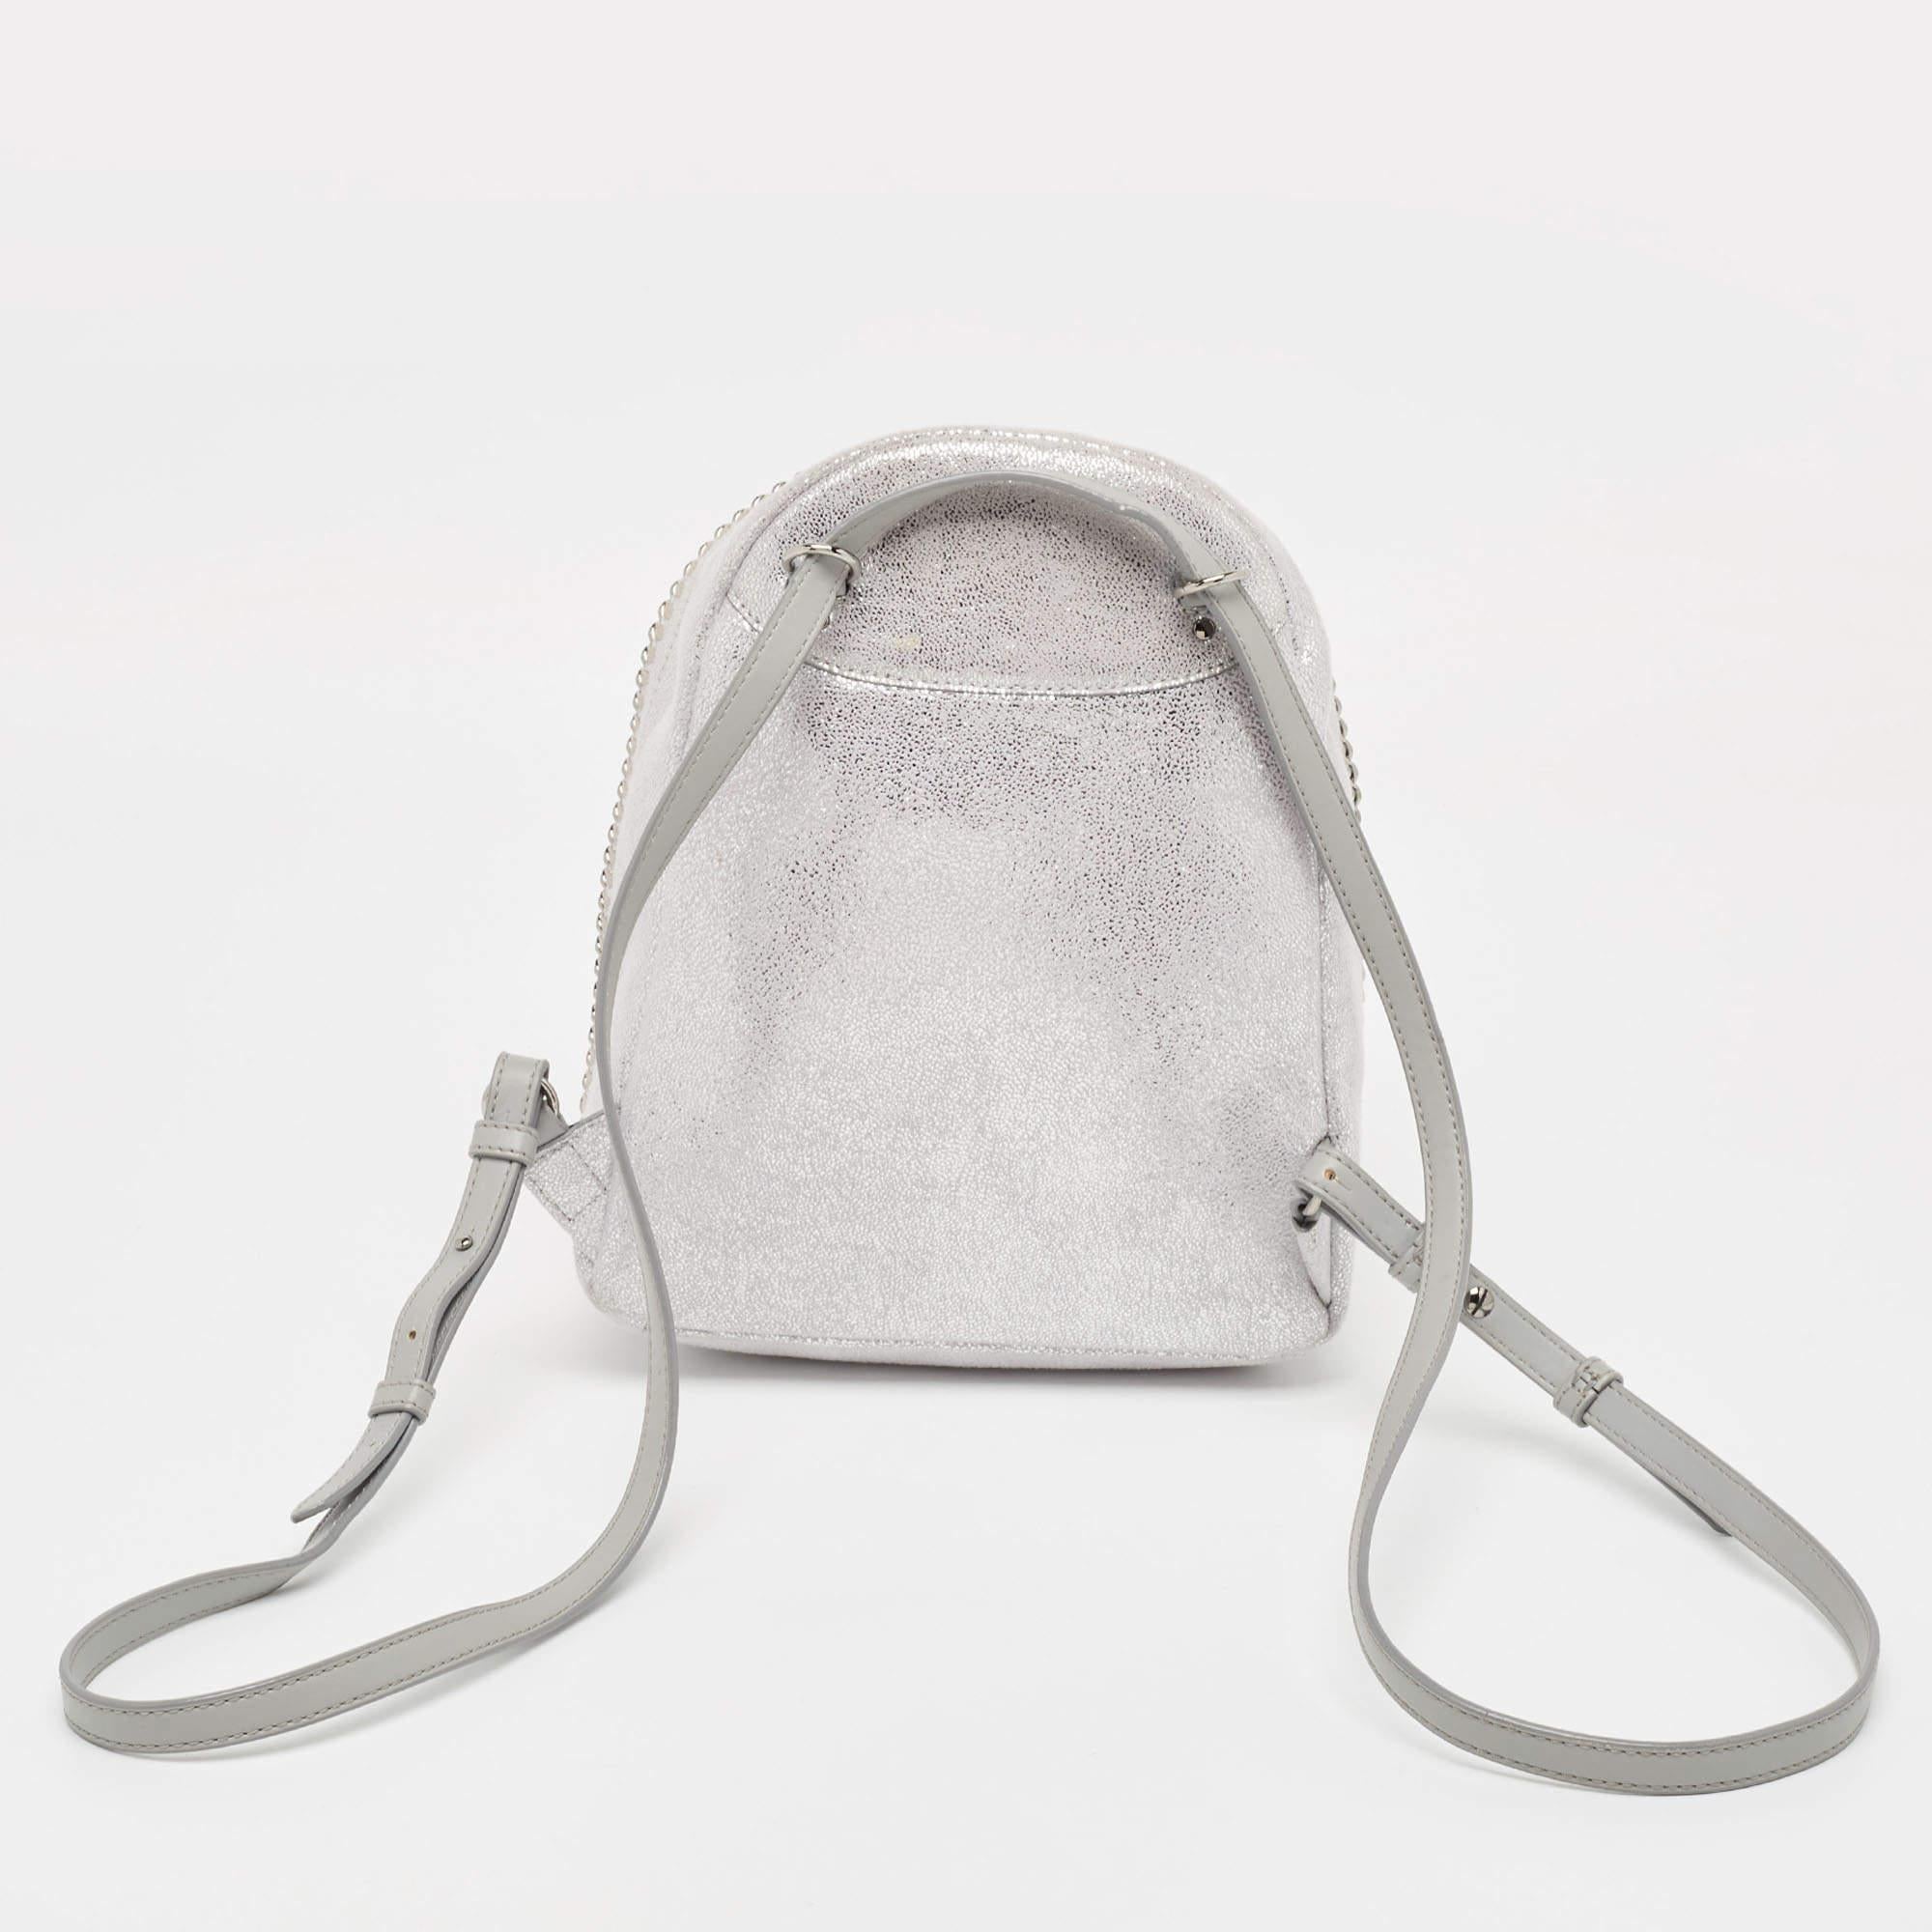 Fabriqué à partir de matériaux de qualité, ce sac à dos de créateur manque à votre garde-robe. Ce sac à dos élégant, qui promet de rehausser votre ensemble, vous permettra d'être à la mode dans n'importe quelle tenue.

